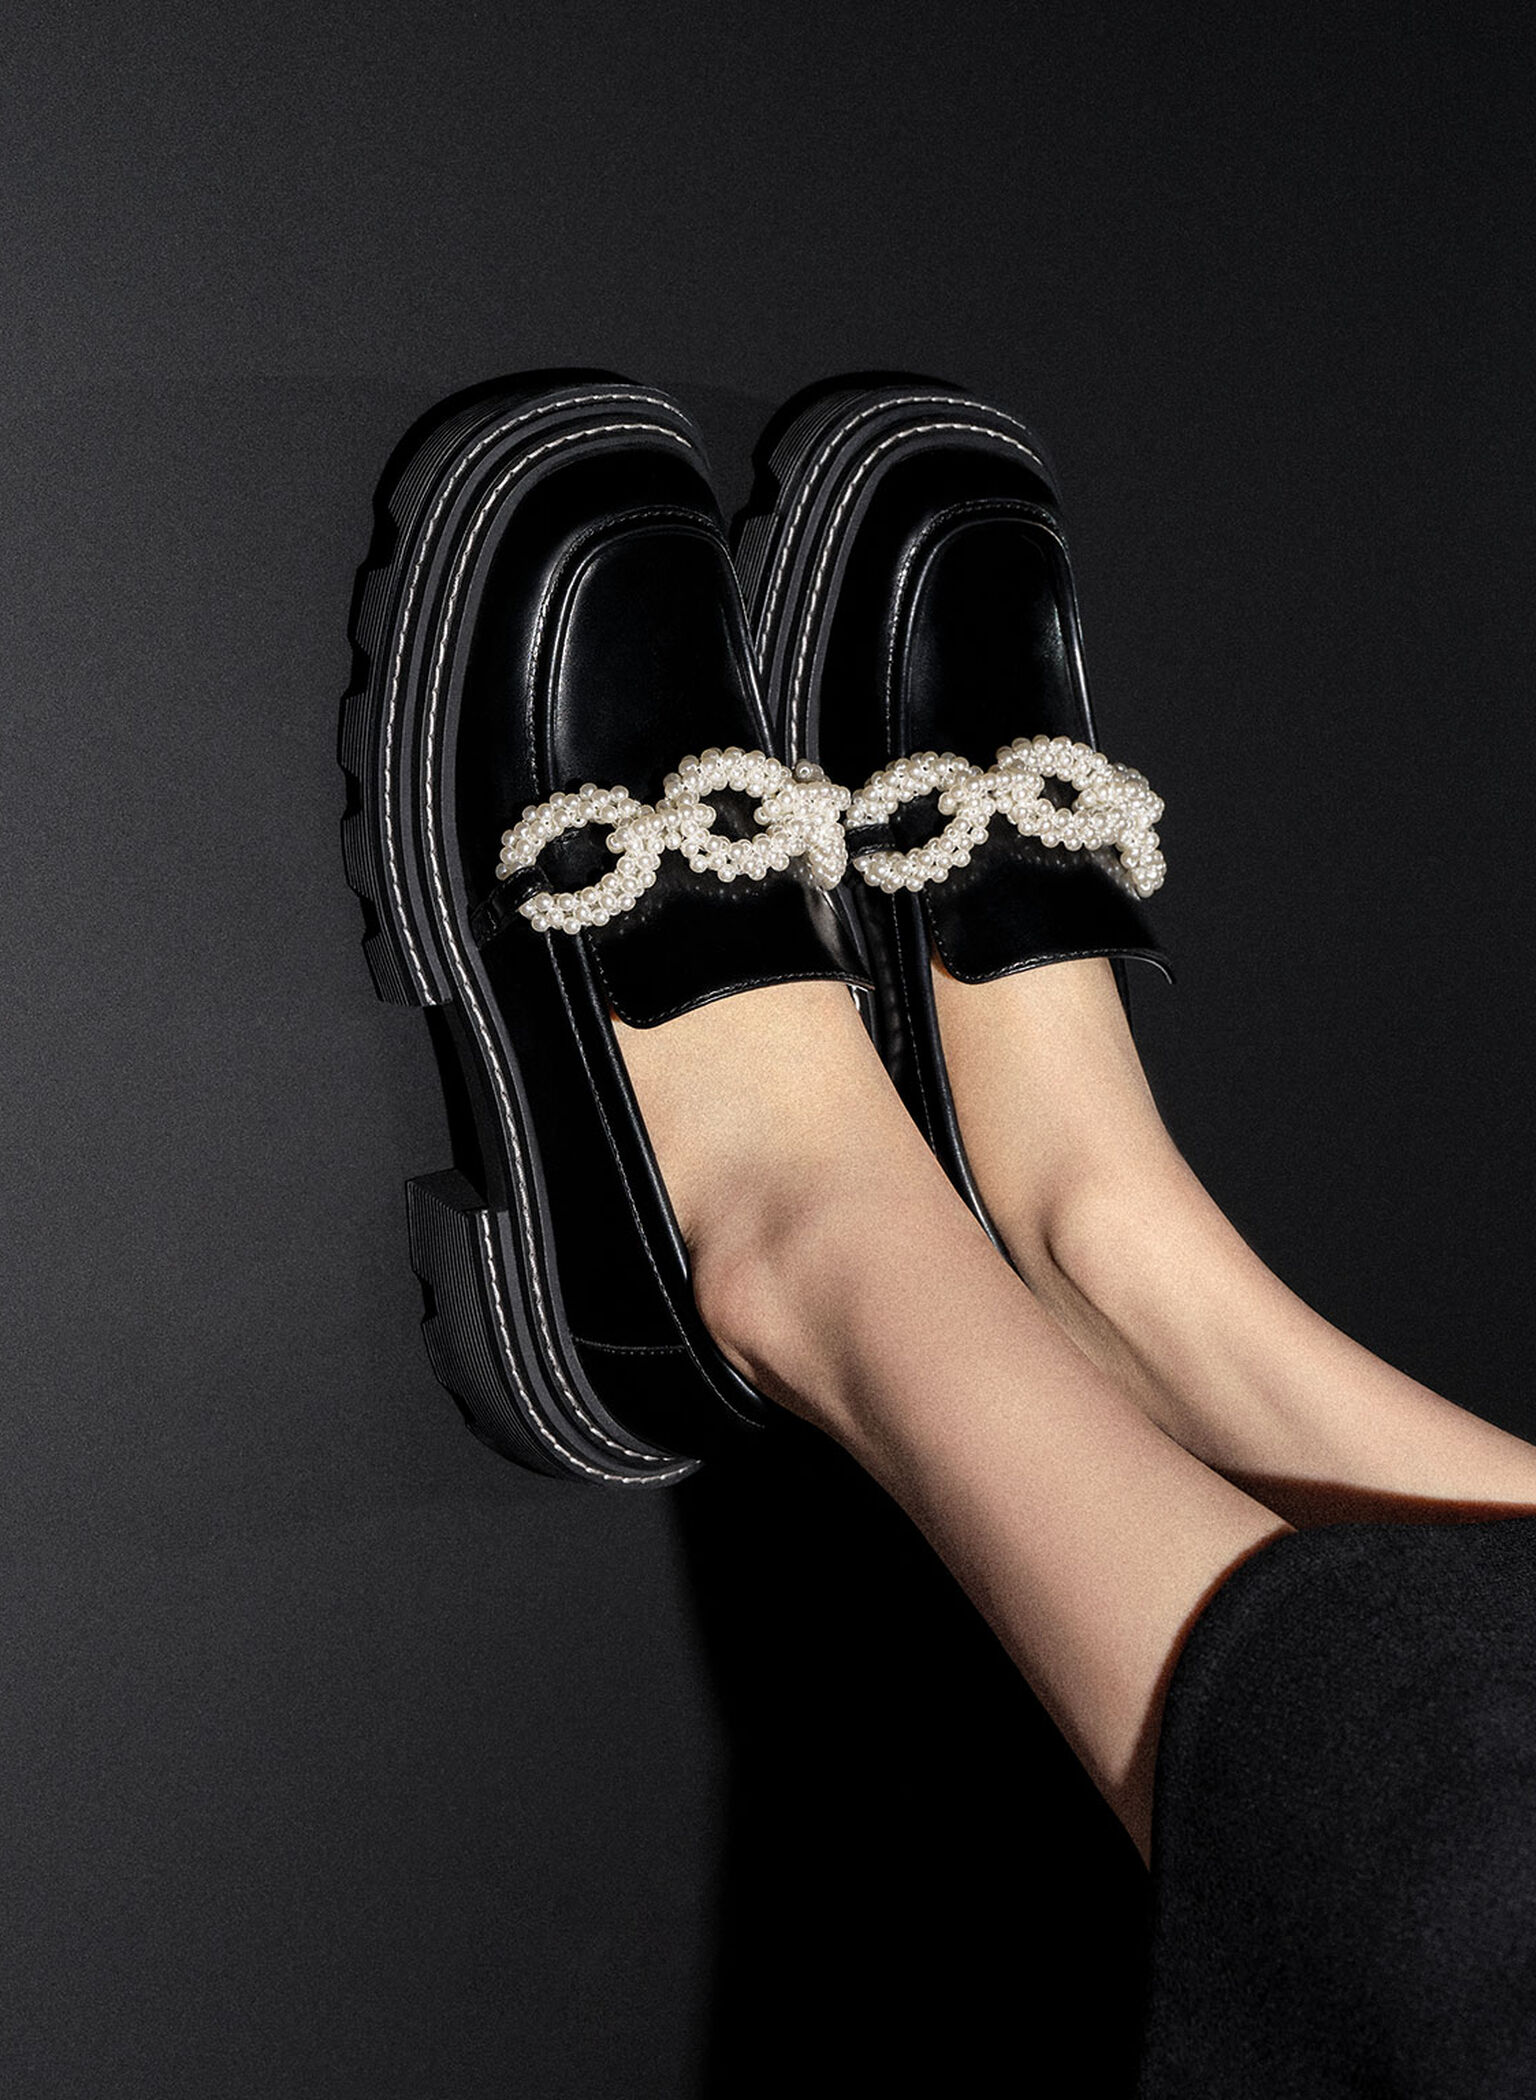 Perline Beaded Platform Loafers, Black, hi-res